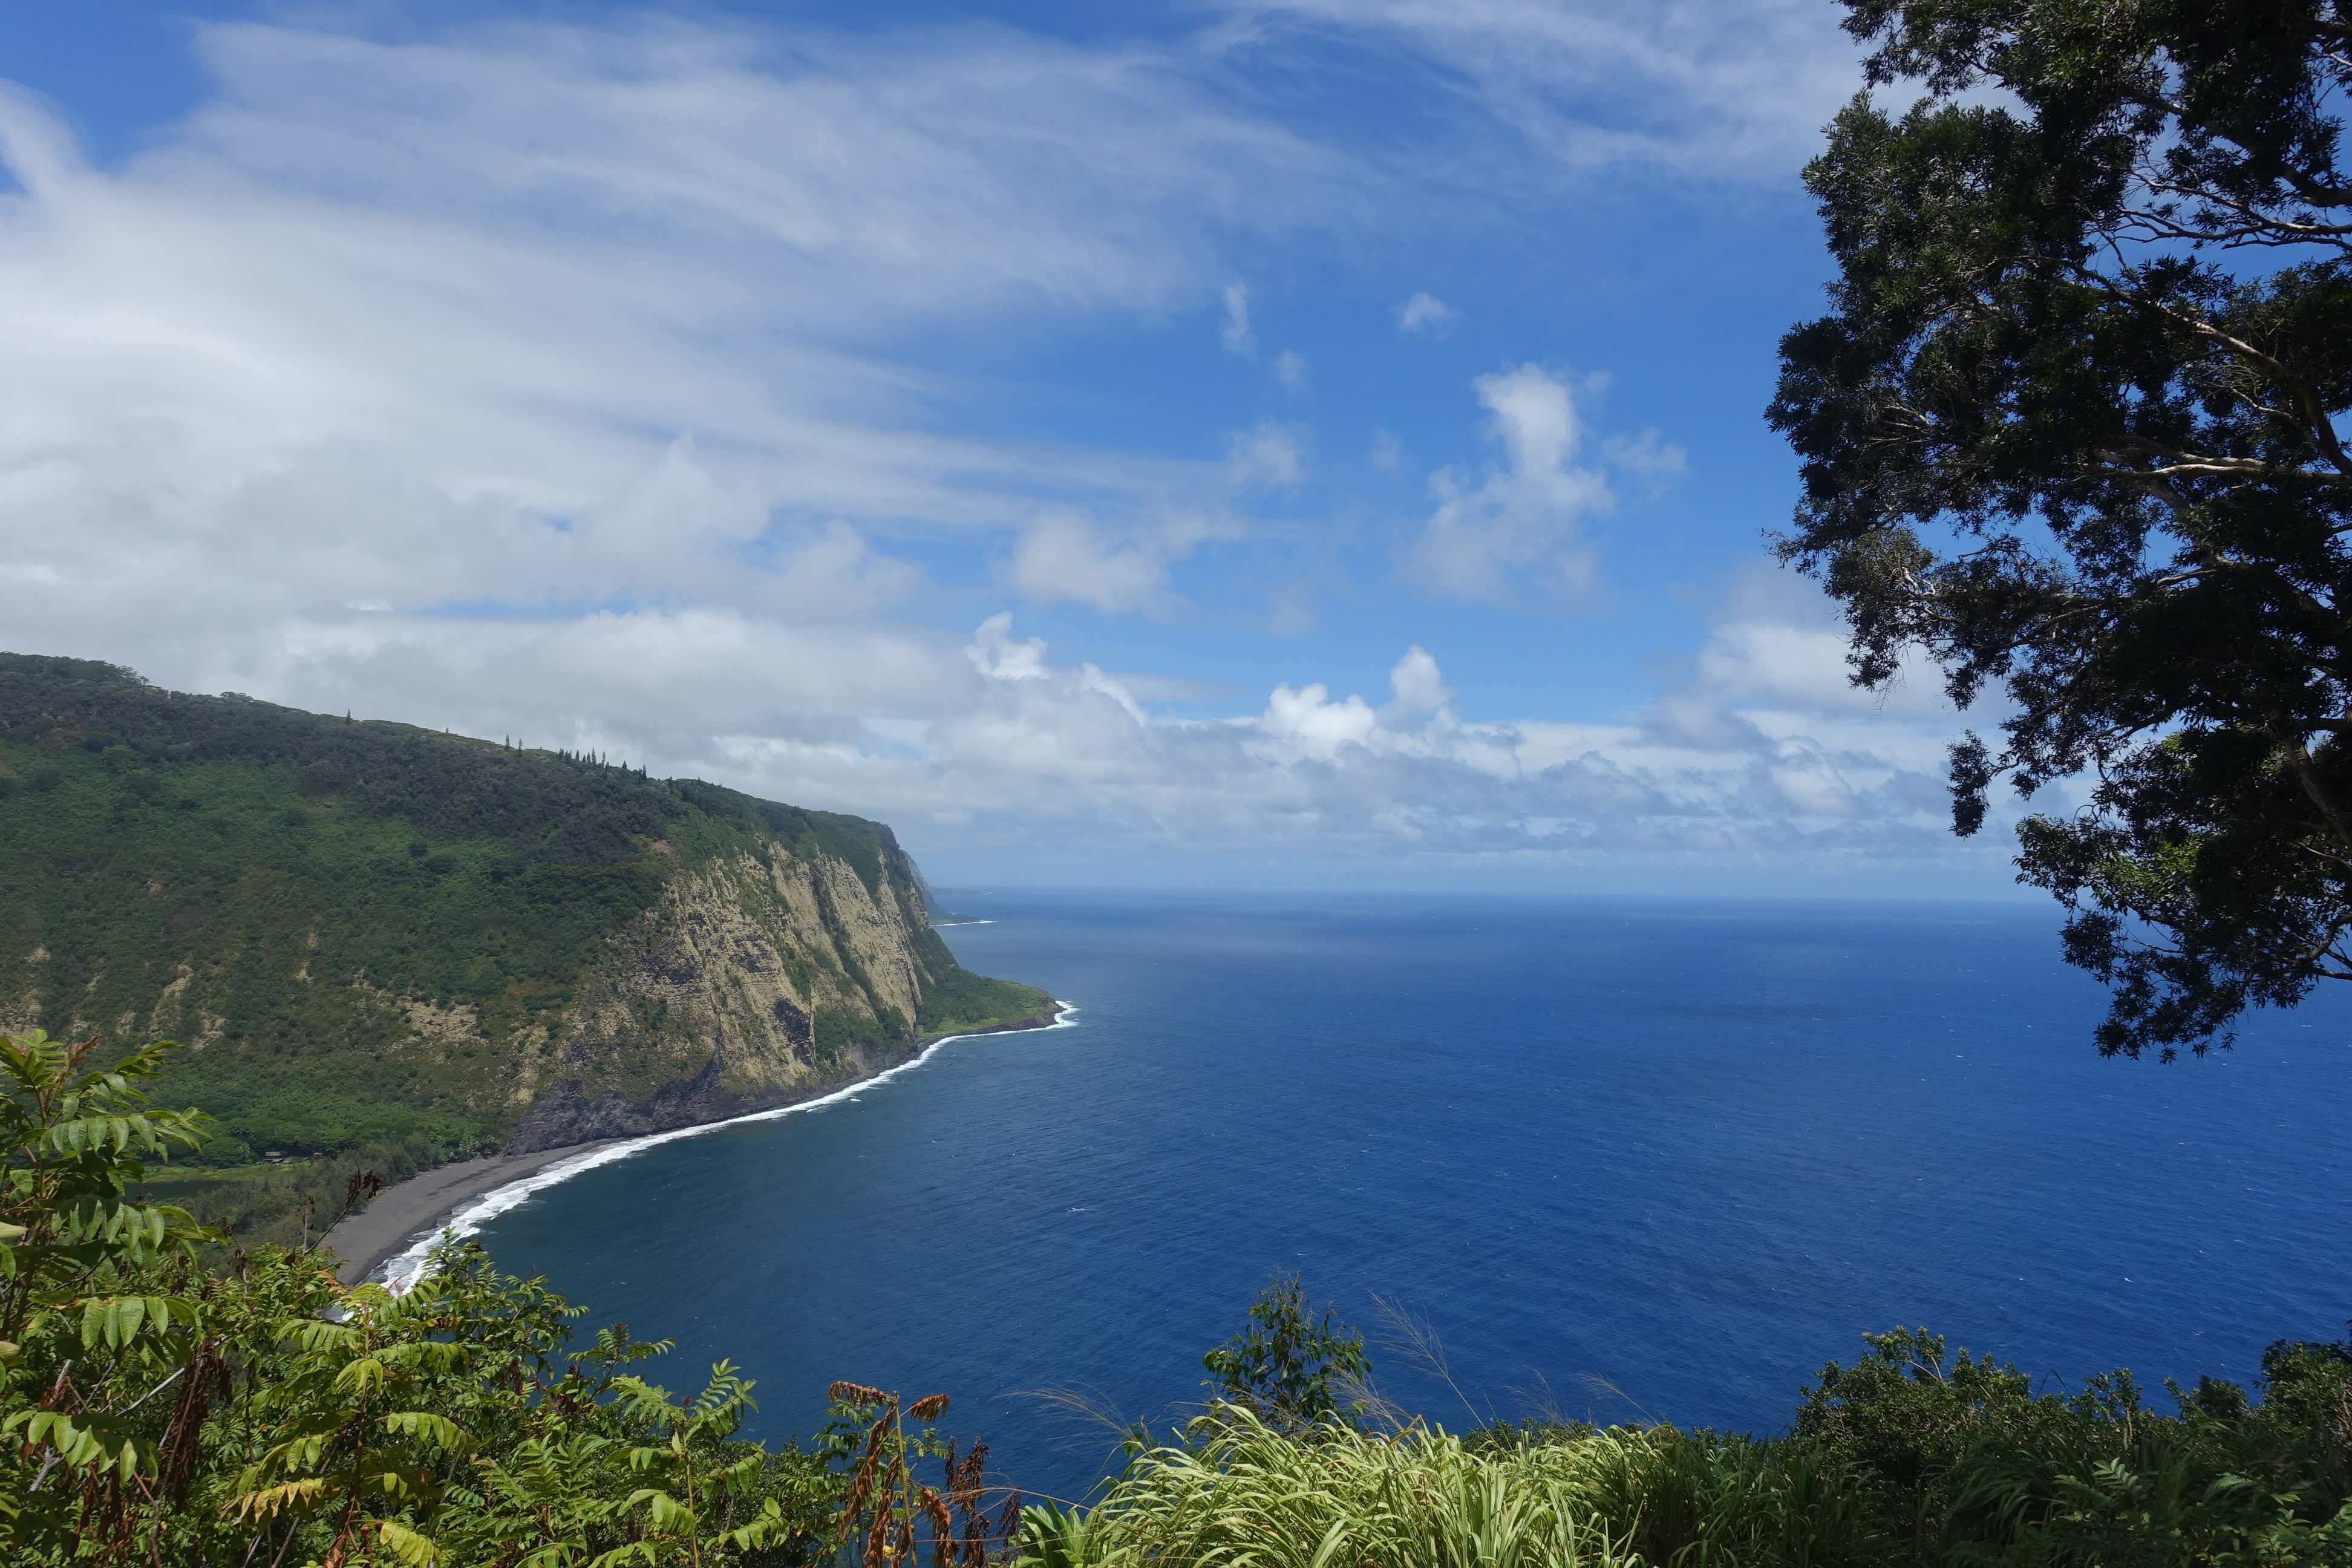 ハワイの観光戦略で重視される「レスポンシブル・ツーリズム」（責任ある観光）とは？　地元と旅行者のあるべき関係性を聞いてきた